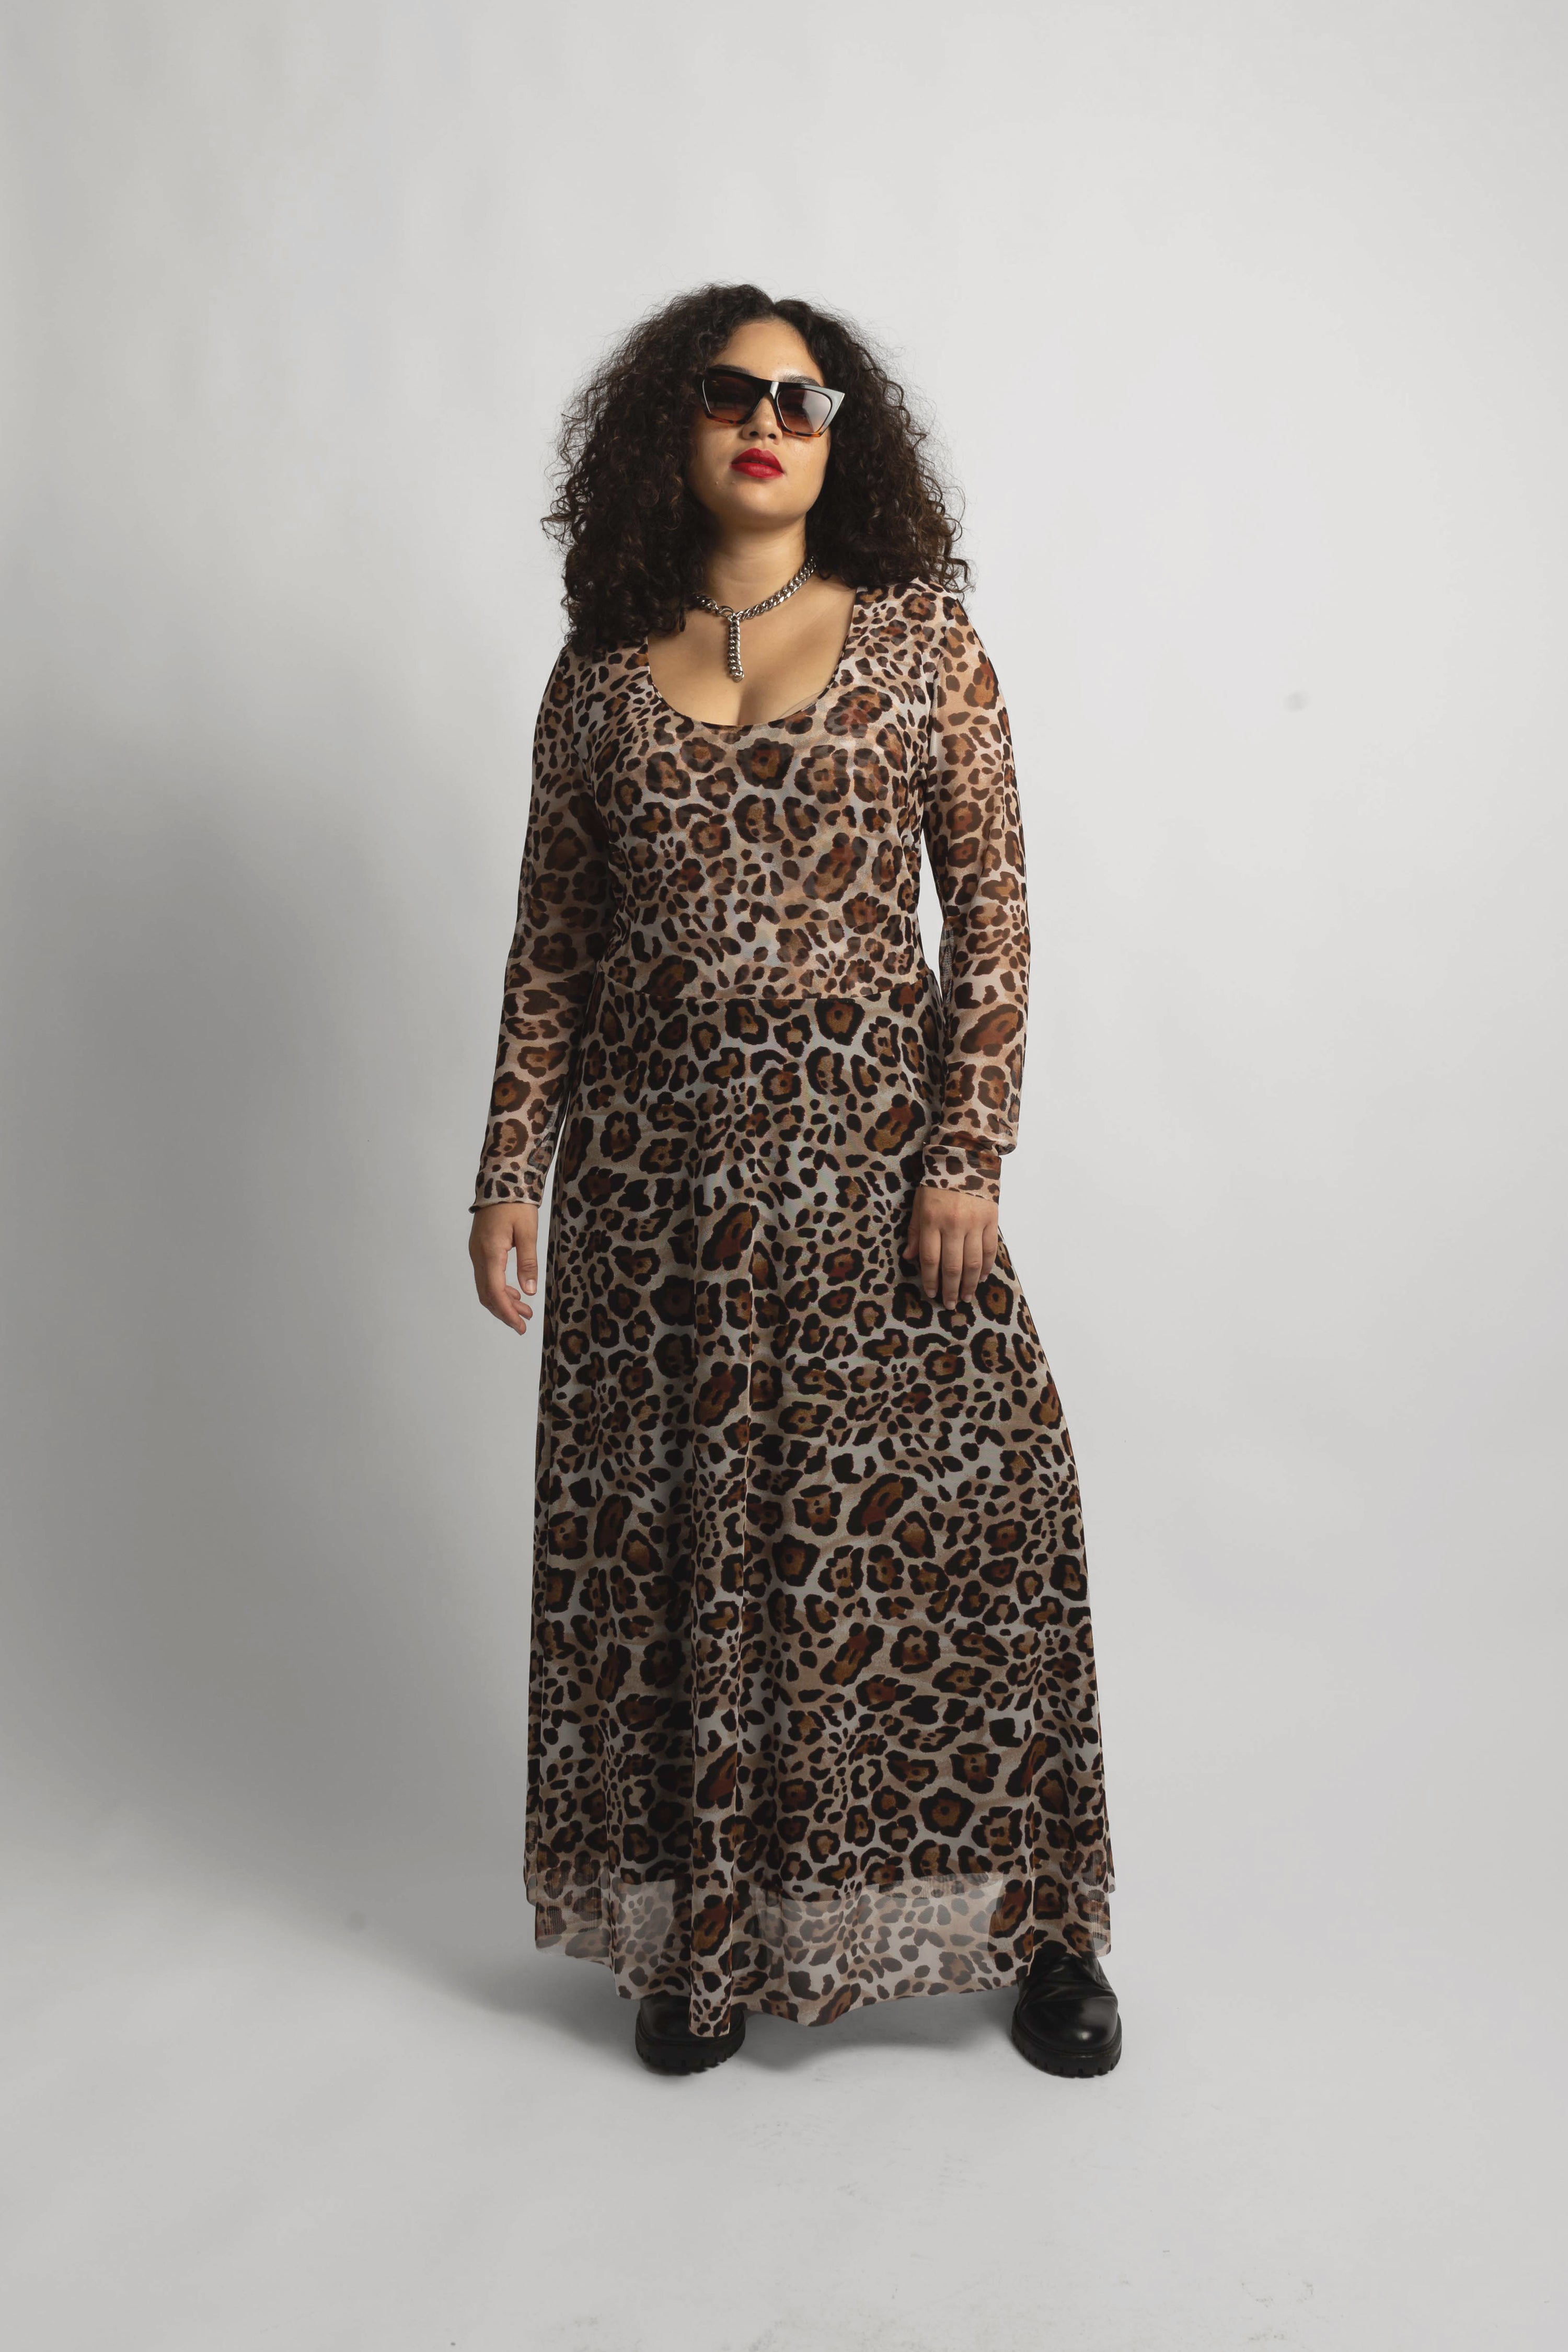 model wearing the new leopard mesh dress